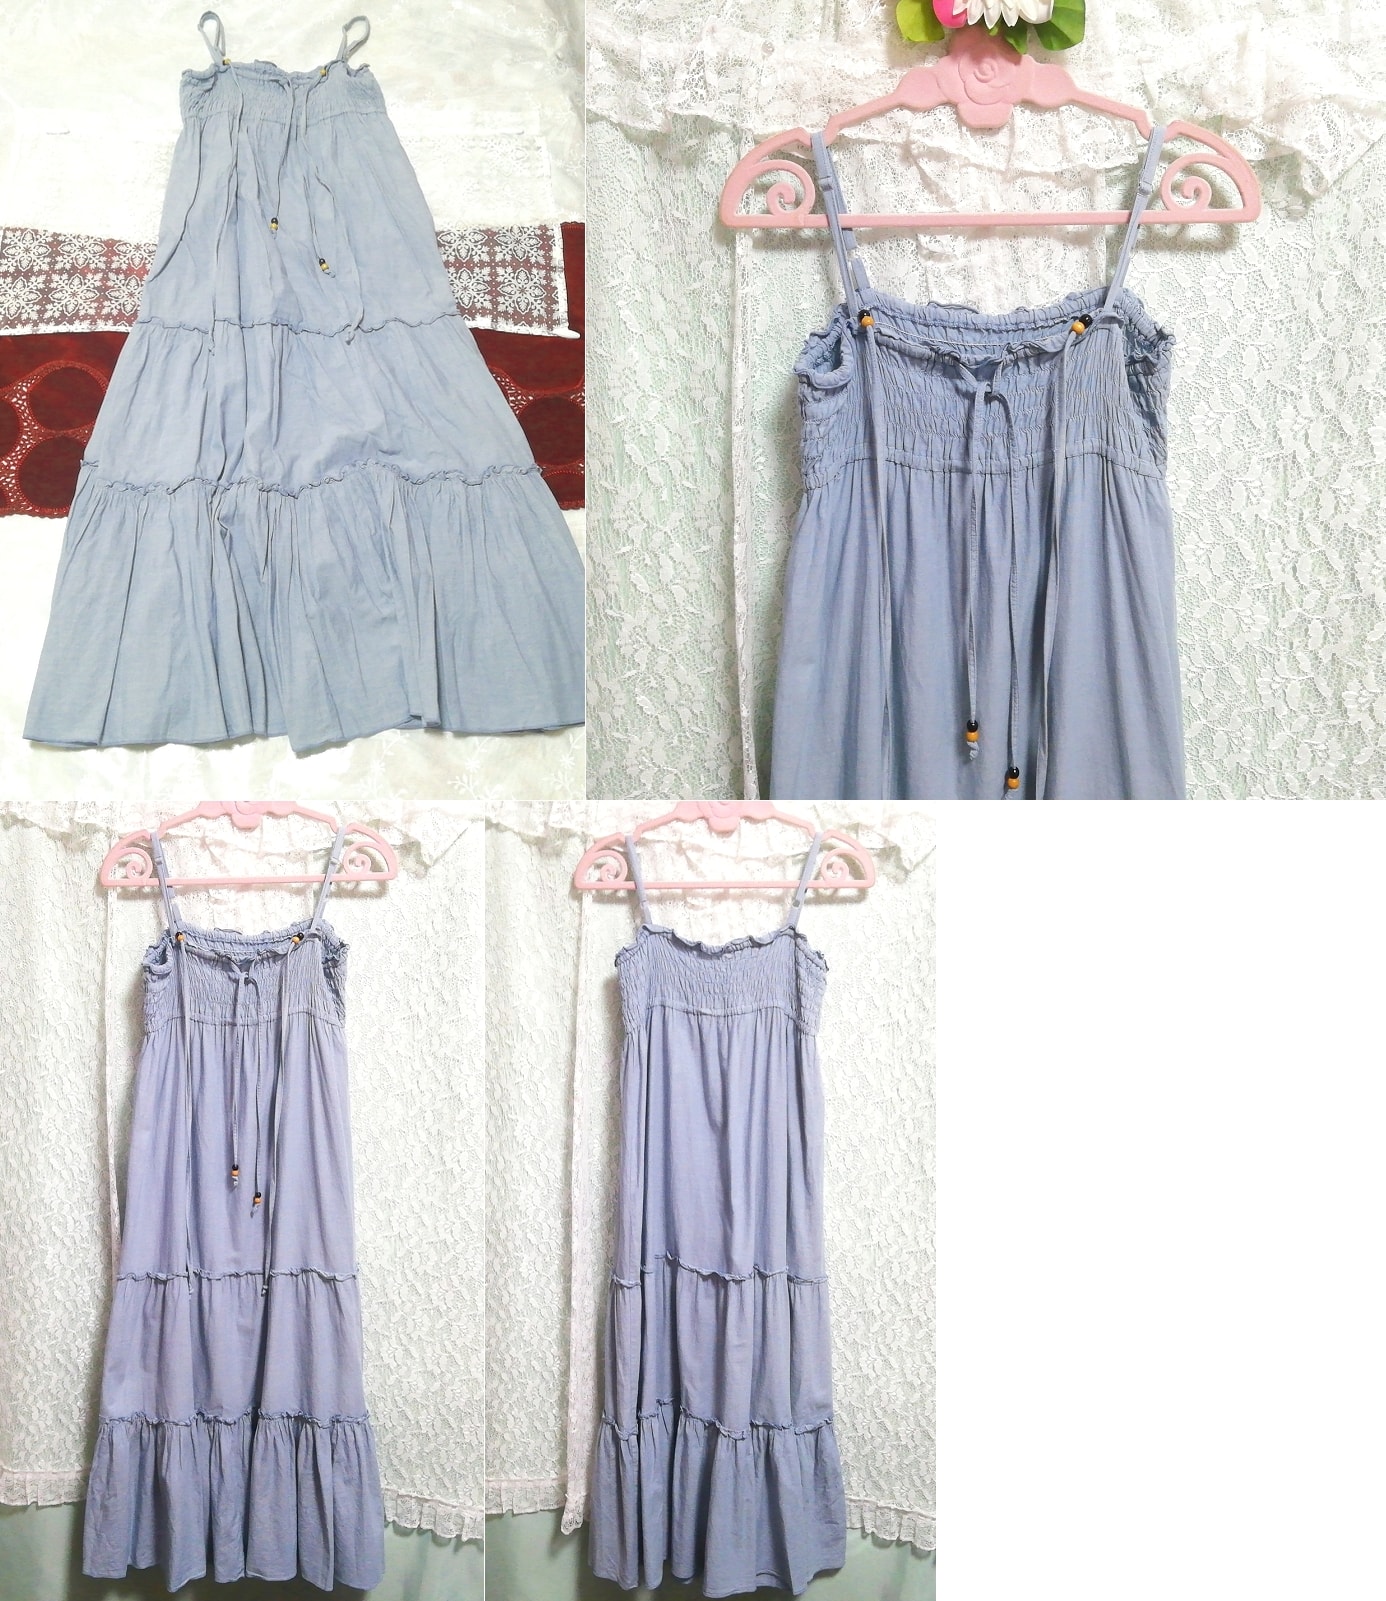 Denim-String-Baumwoll-Negligé-Nachthemd-Maxi-Camisole-Kleid, Mode, Frauenmode, Leibchen